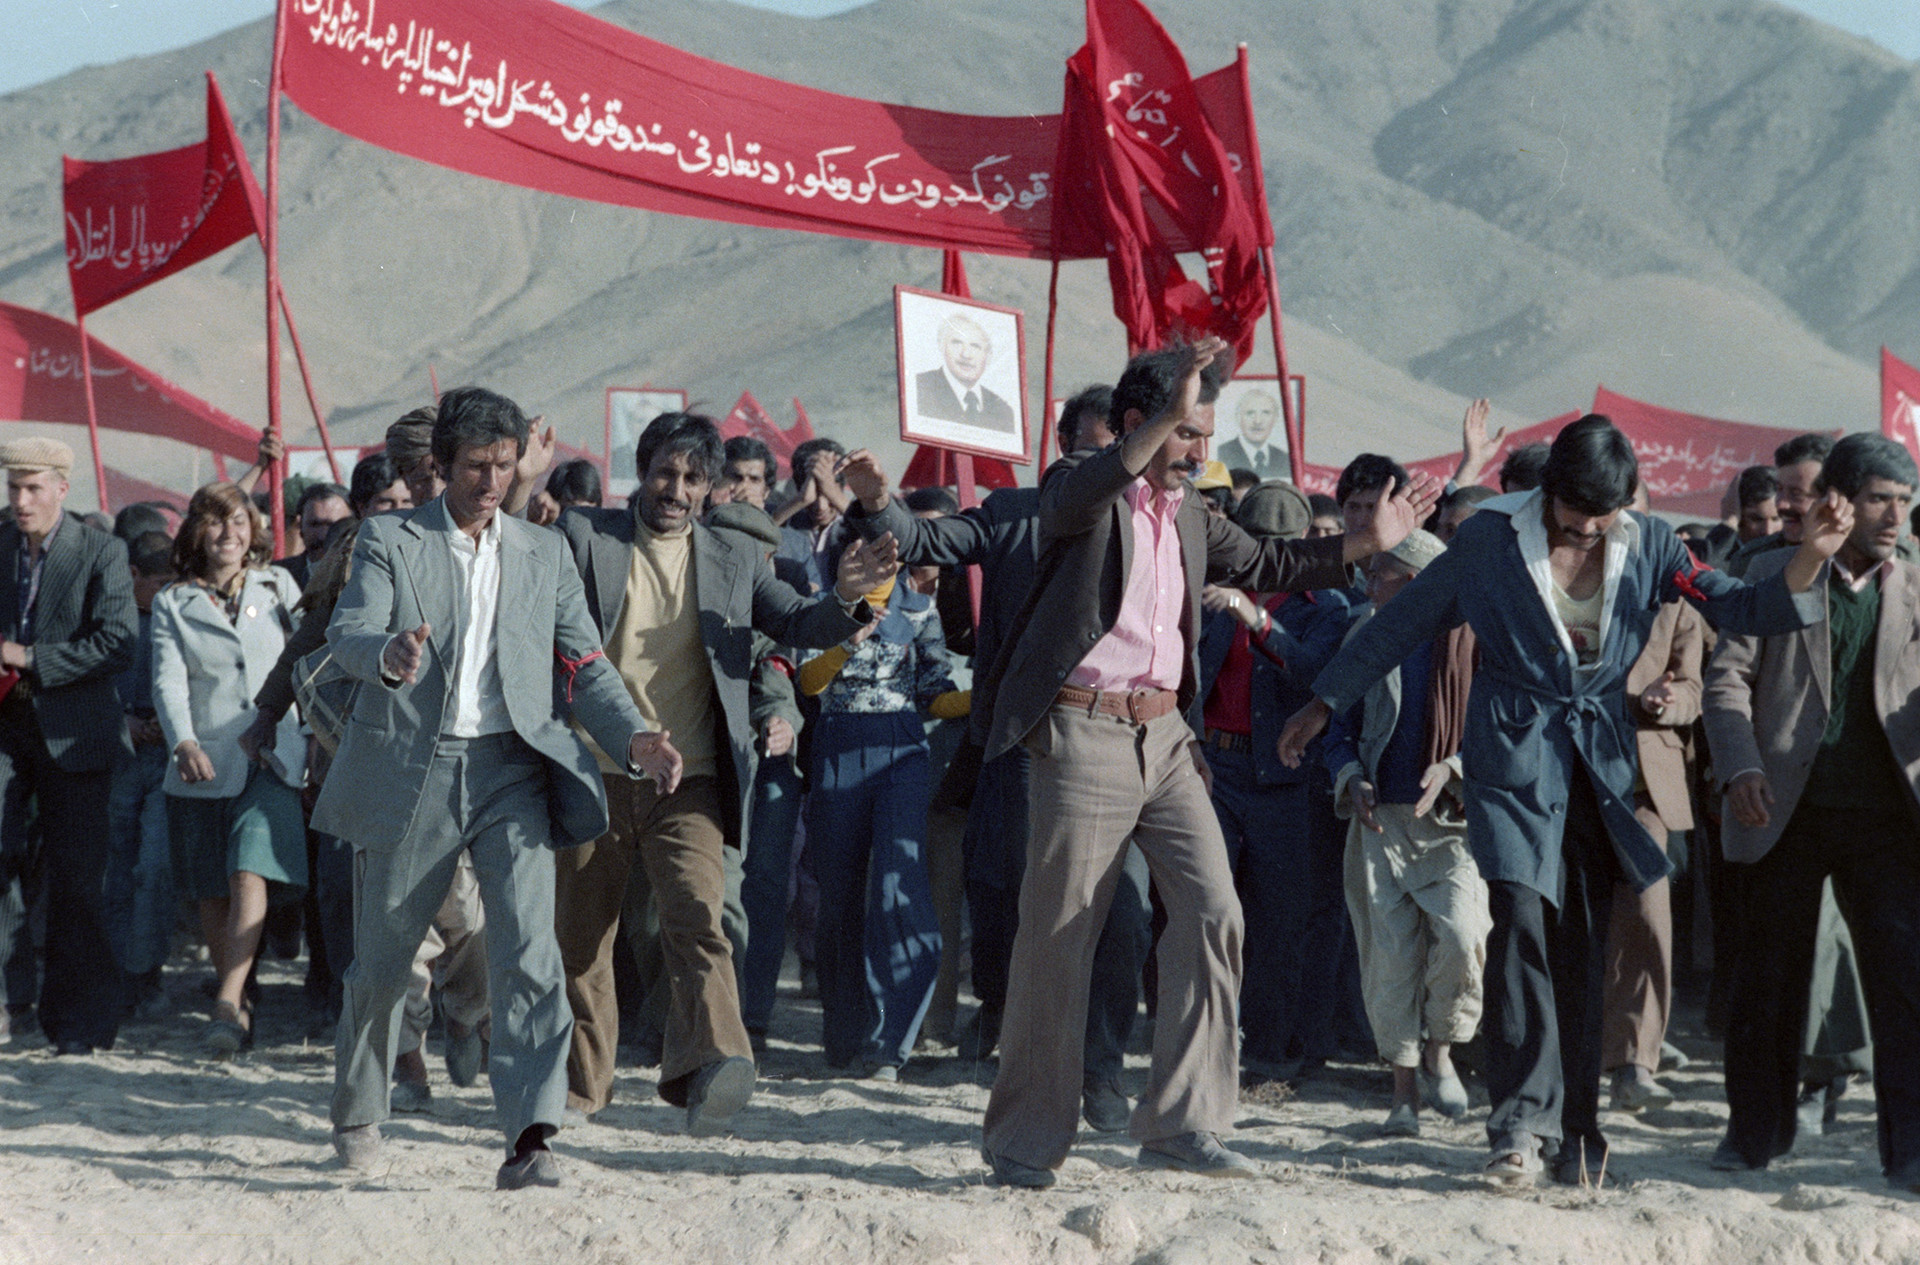 Socialistas afegãos comemorando a vitória, 1979
